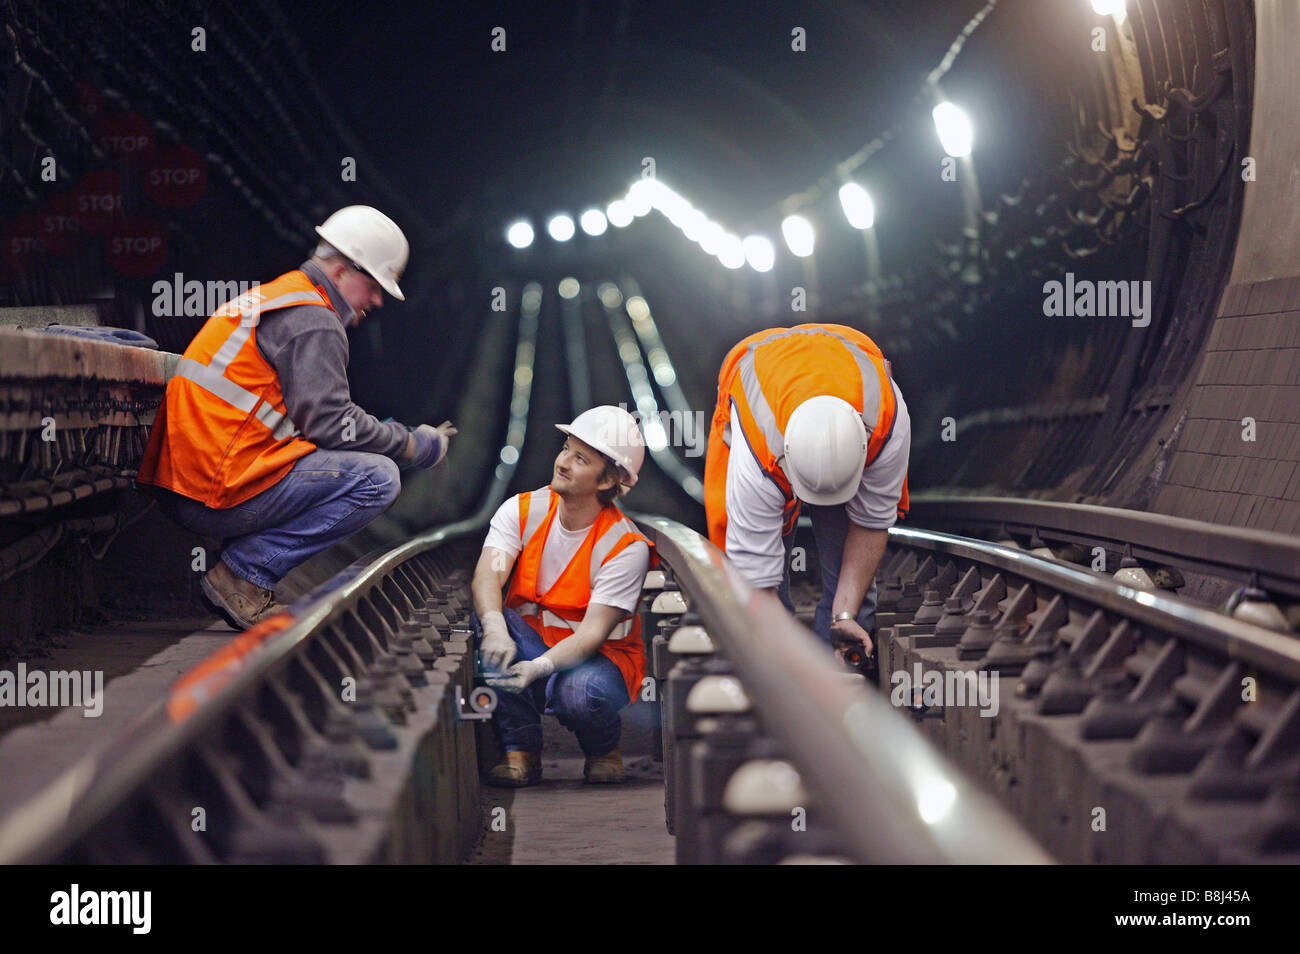 Bauunternehmen Prisma Ziele in u-Bahnstation zu installieren um strukturelle Bewegung verursacht durch in der Nähe Bauarbeiten zu erkennen. Stockfoto